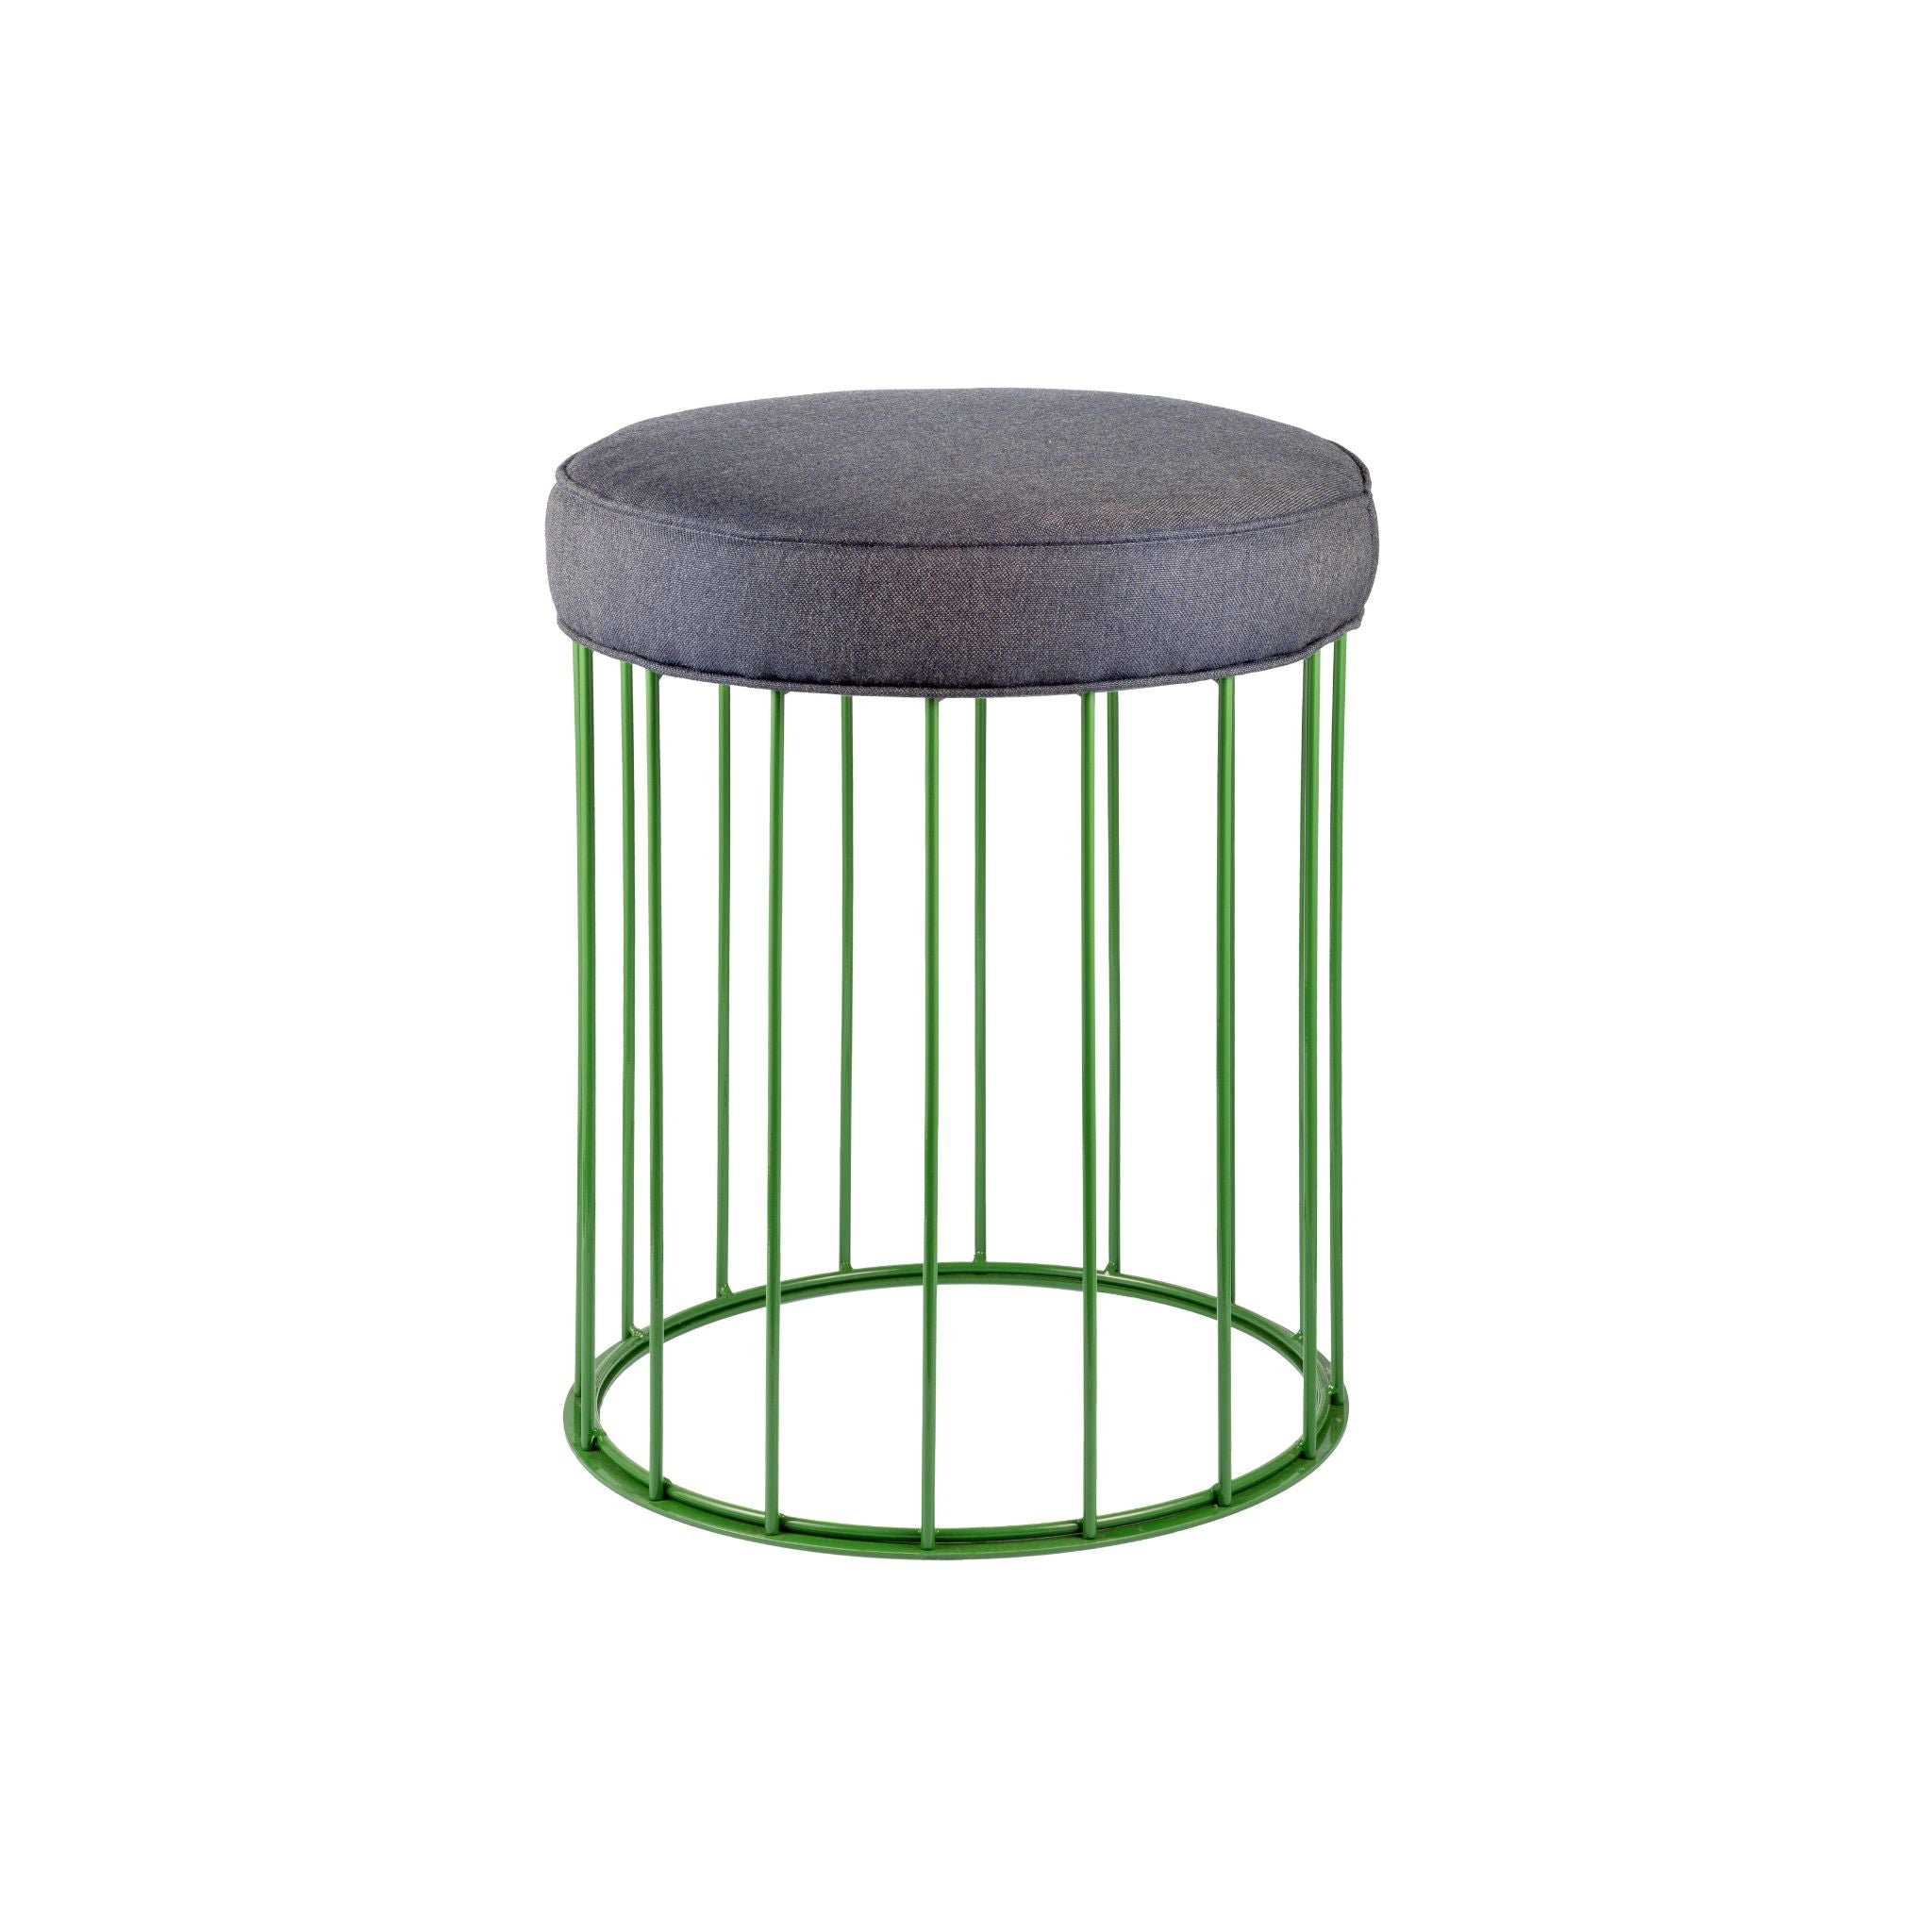 Sgabello in ferro verde Cage grass - ilbronzetto